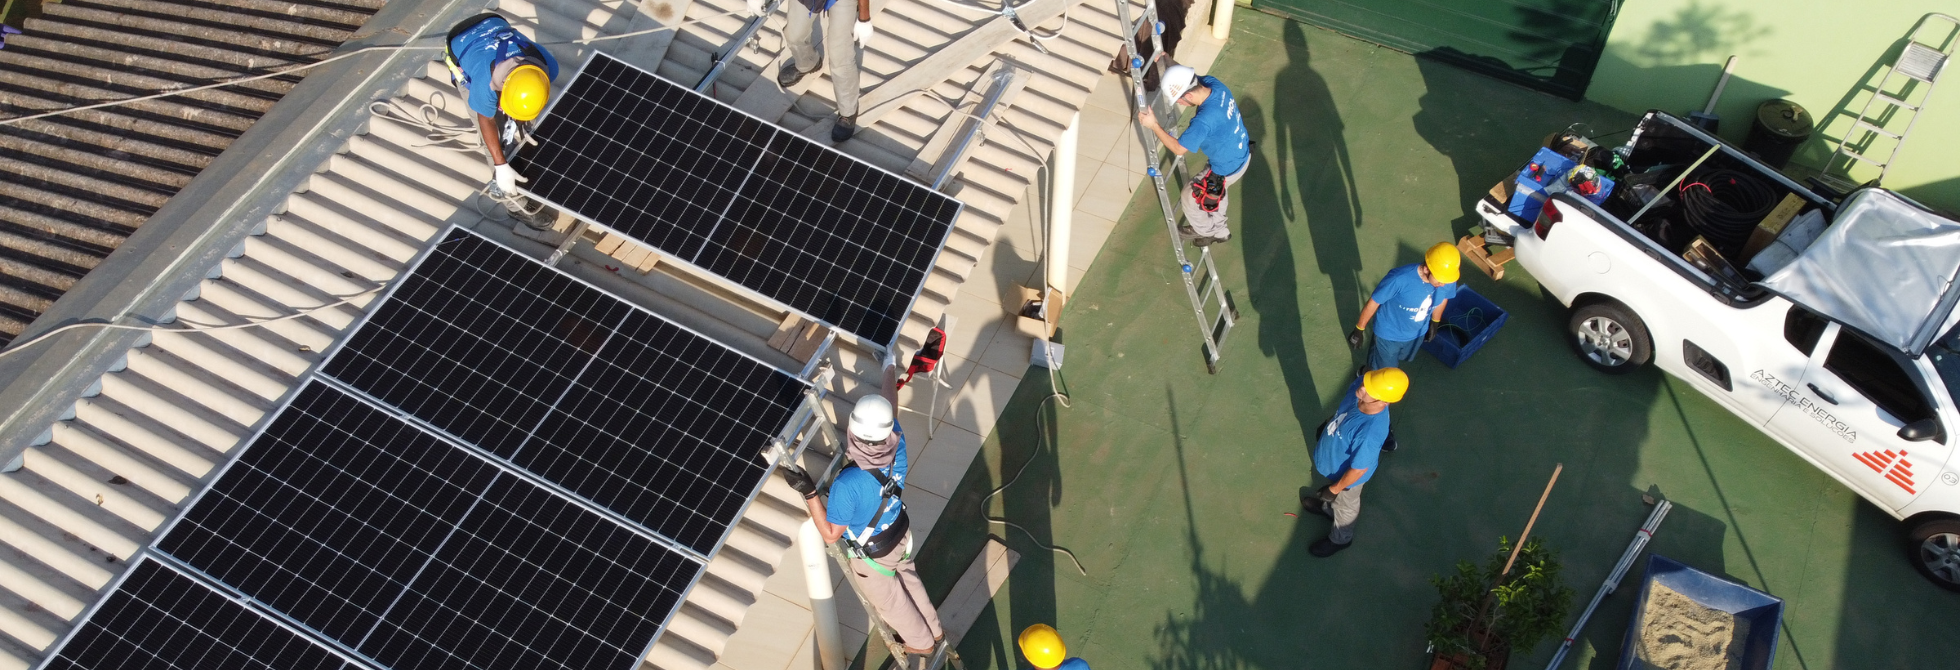 A parceria inaugura o Curso de instaladores de energia solar oferecido pelo Litro de Luz Brasil aos moradores das comunidades já atendidas anteriormente